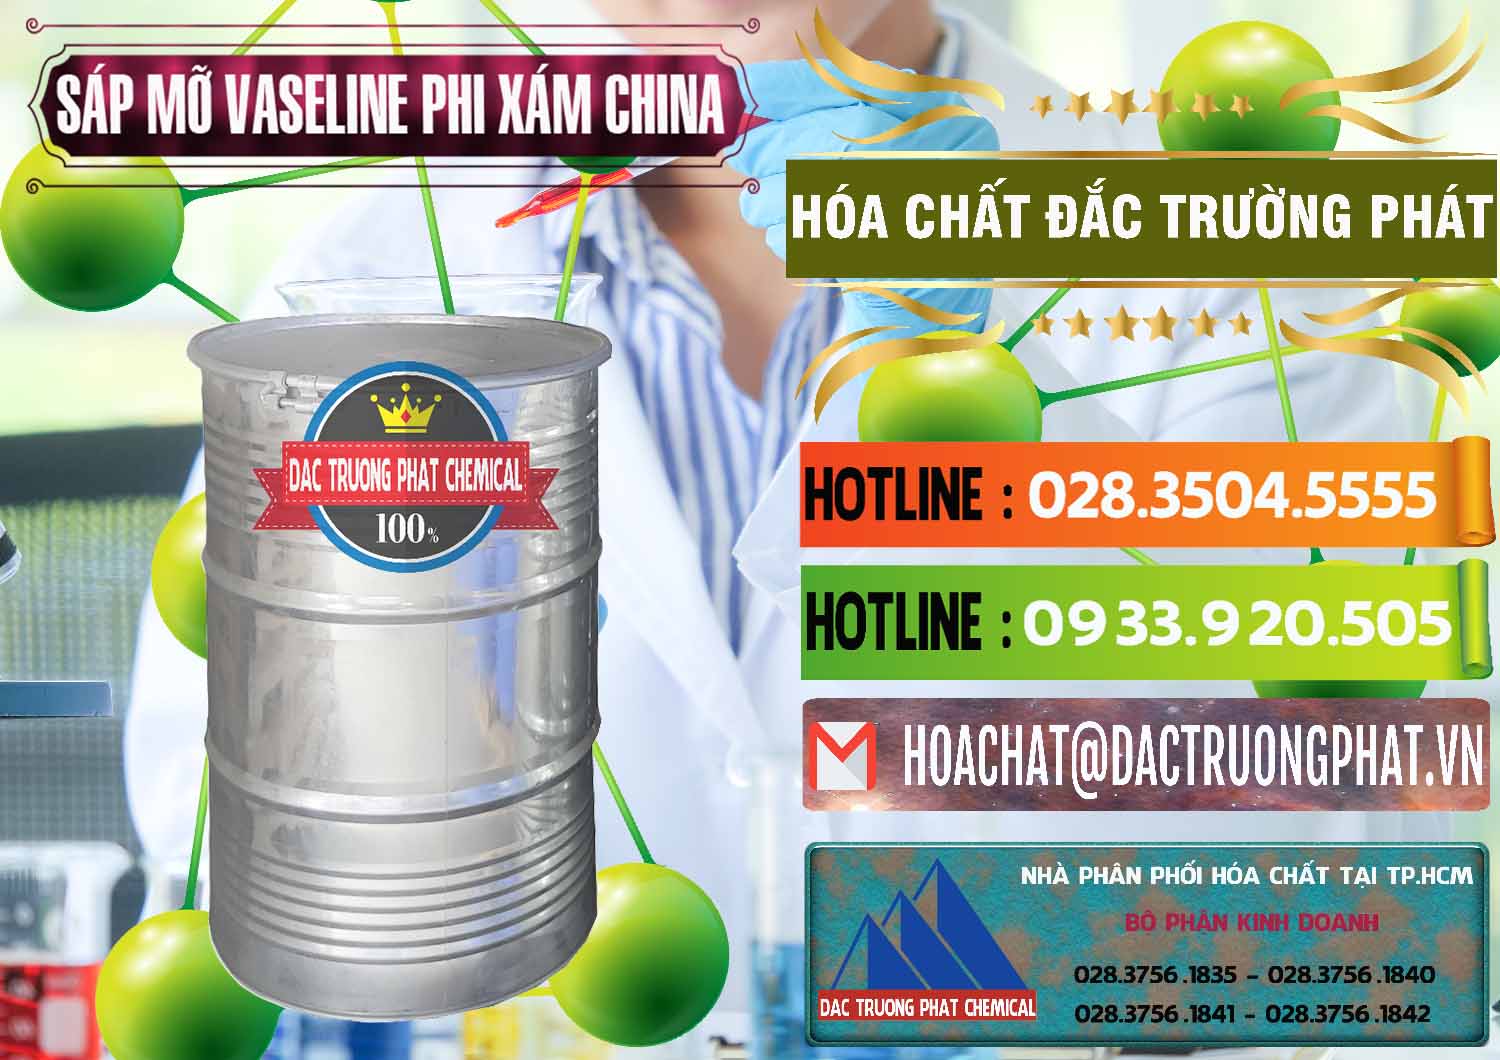 Nơi nhập khẩu - bán Sáp Mỡ Vaseline Phi Xám Trung Quốc China - 0291 - Đơn vị chuyên phân phối - nhập khẩu hóa chất tại TP.HCM - cungcaphoachat.com.vn